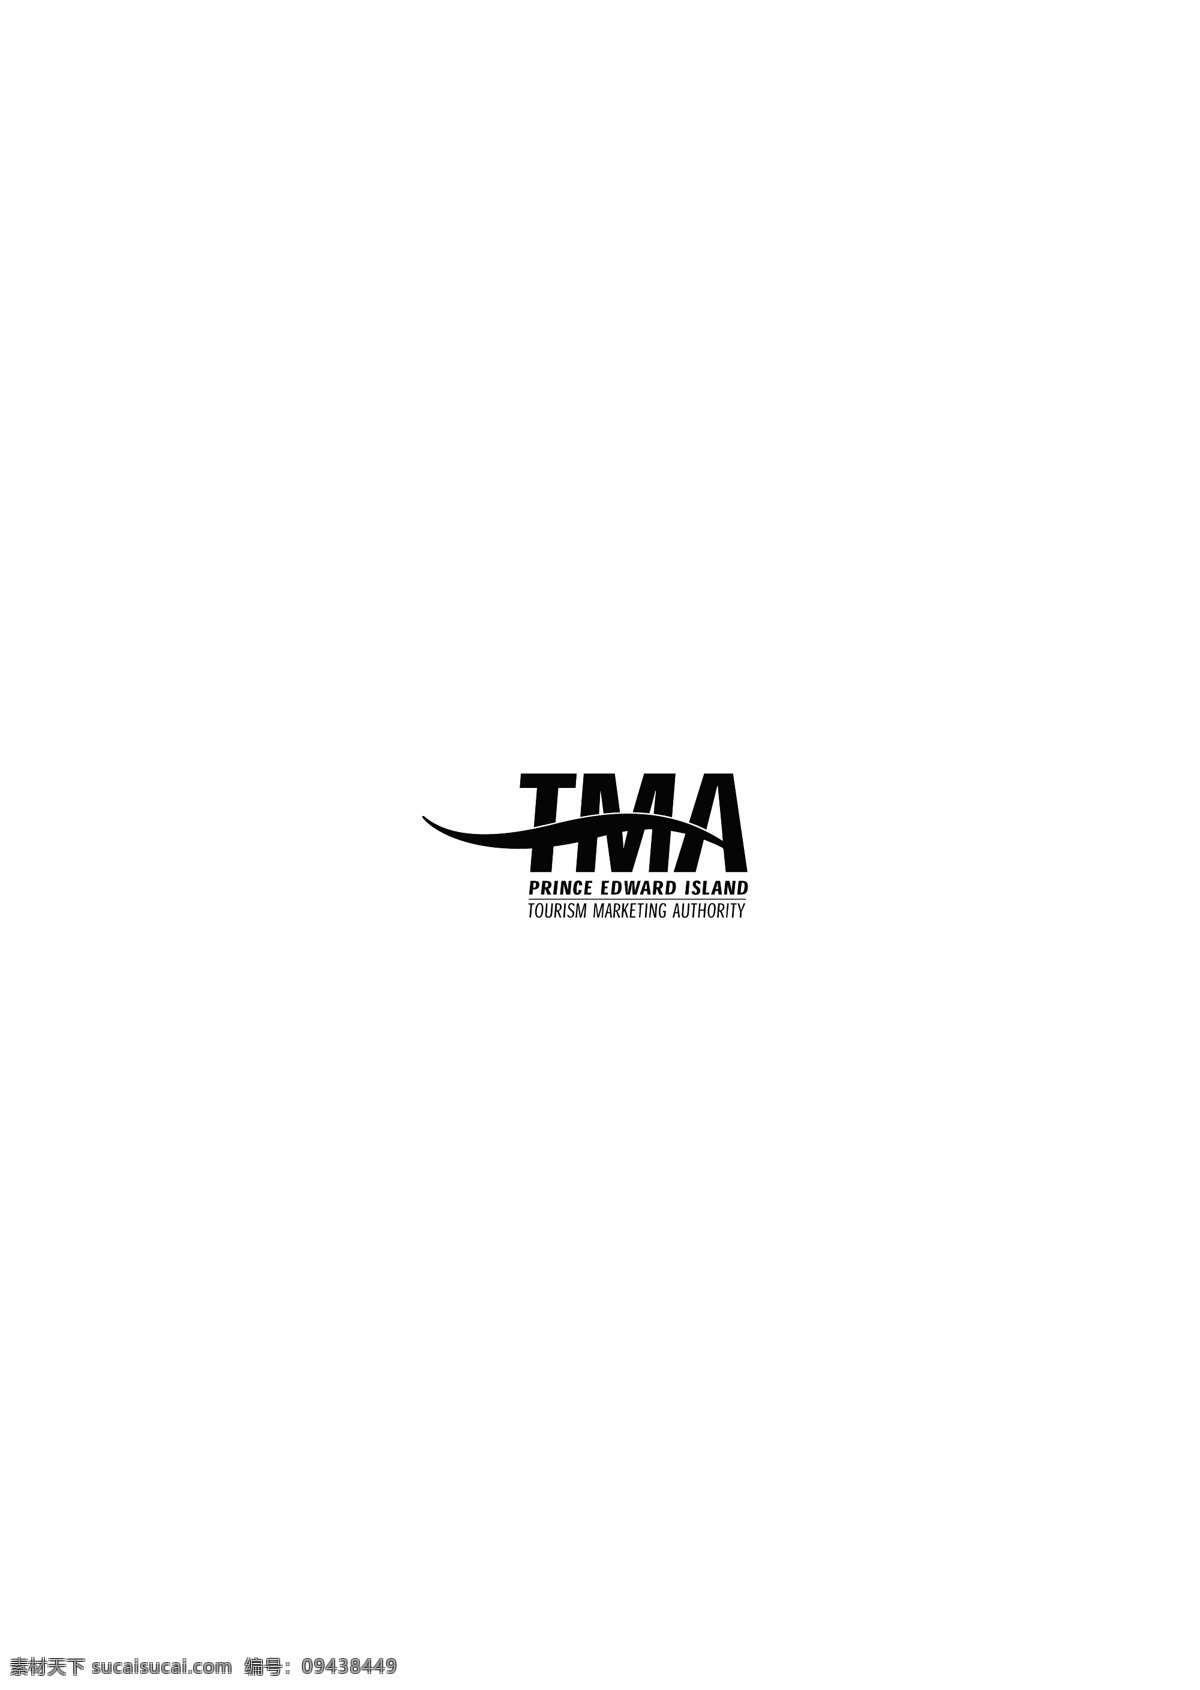 tma logo 设计欣赏 旅游业 标志 标志设计 欣赏 矢量下载 网页矢量 商业矢量 logo大全 红色